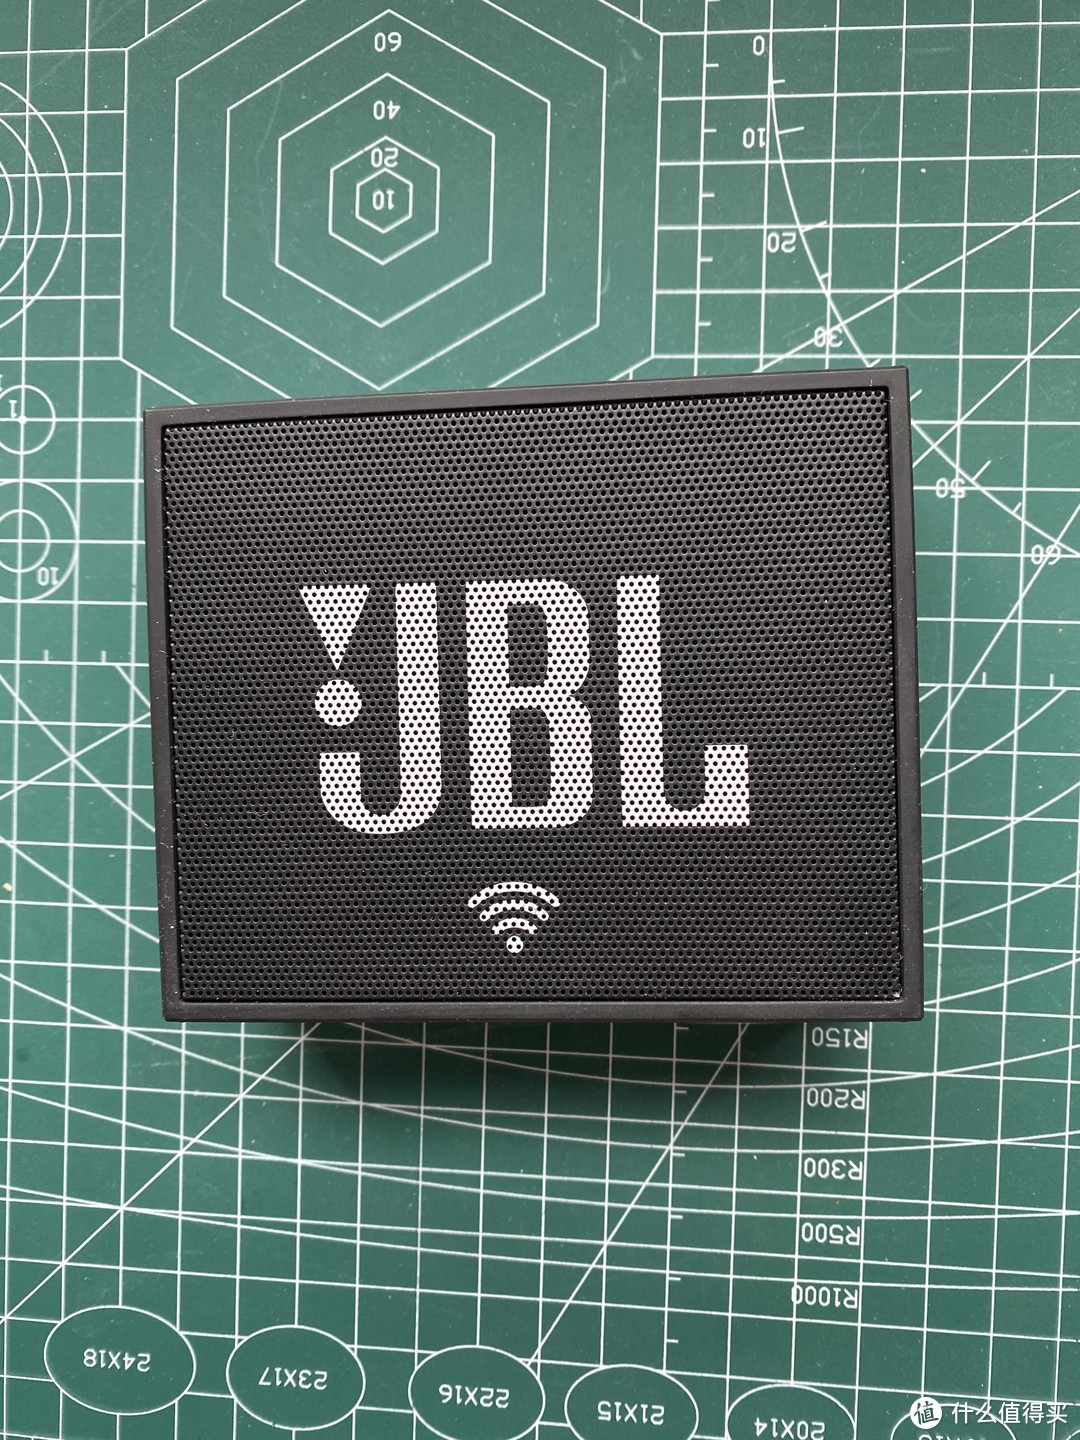 诚意吃灰的JBL蓝牙音箱评测